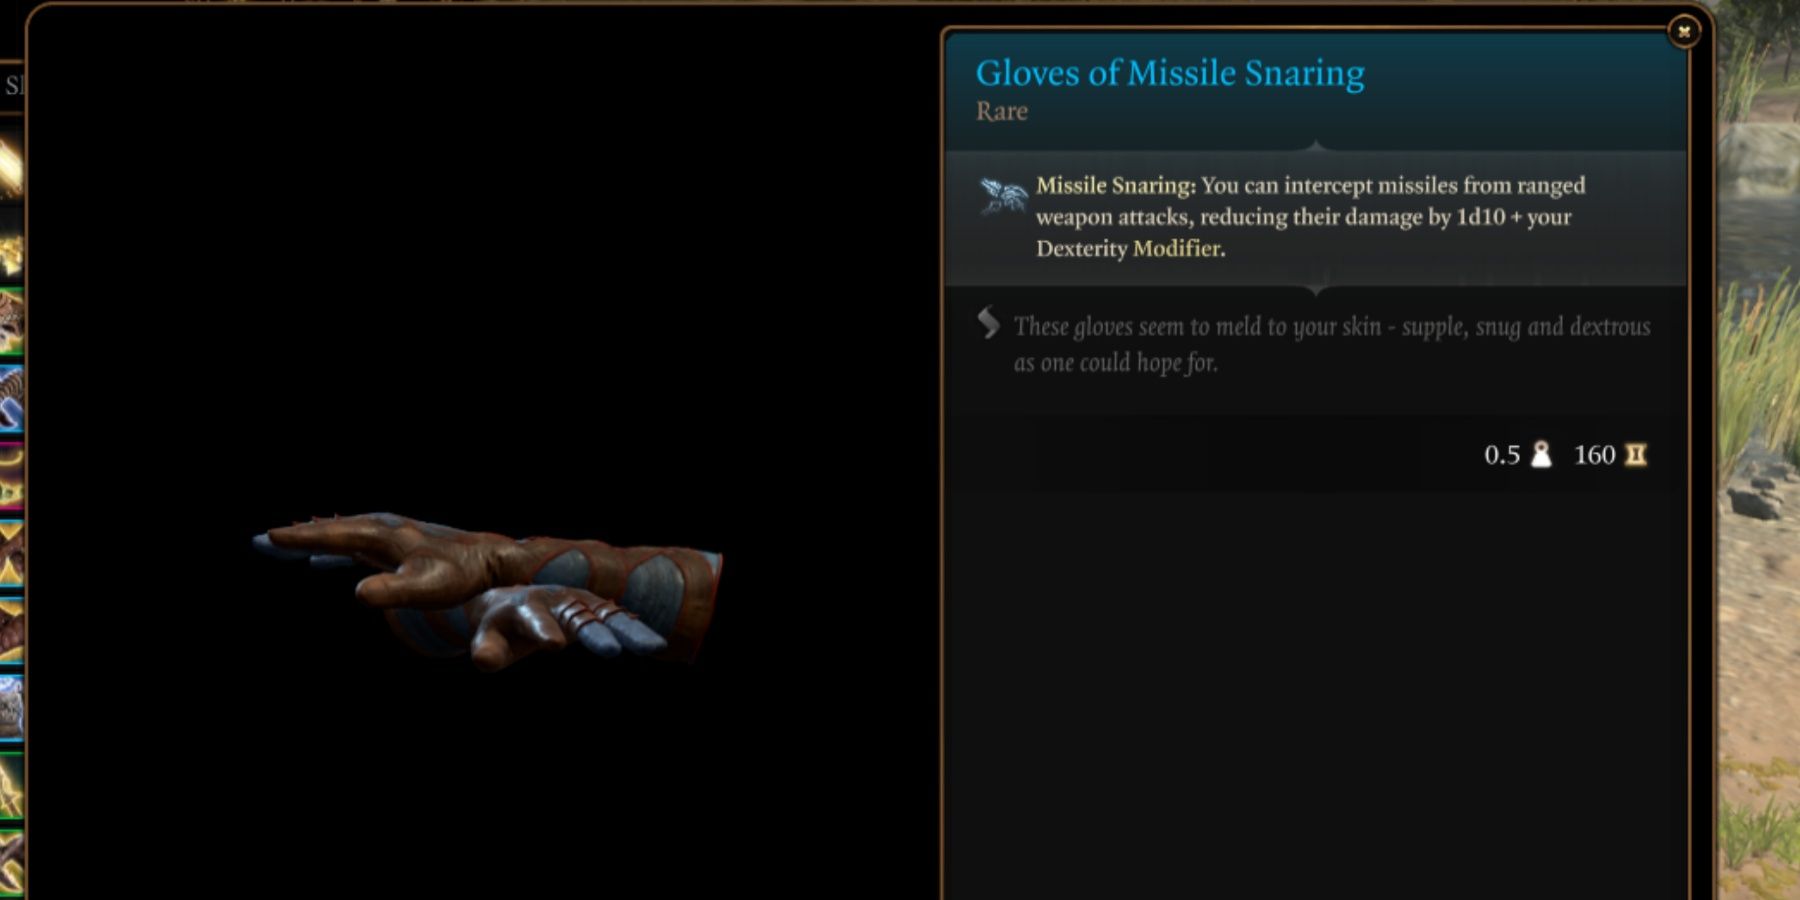 BG3 Gloves of Missile Snaring in-game item menu description